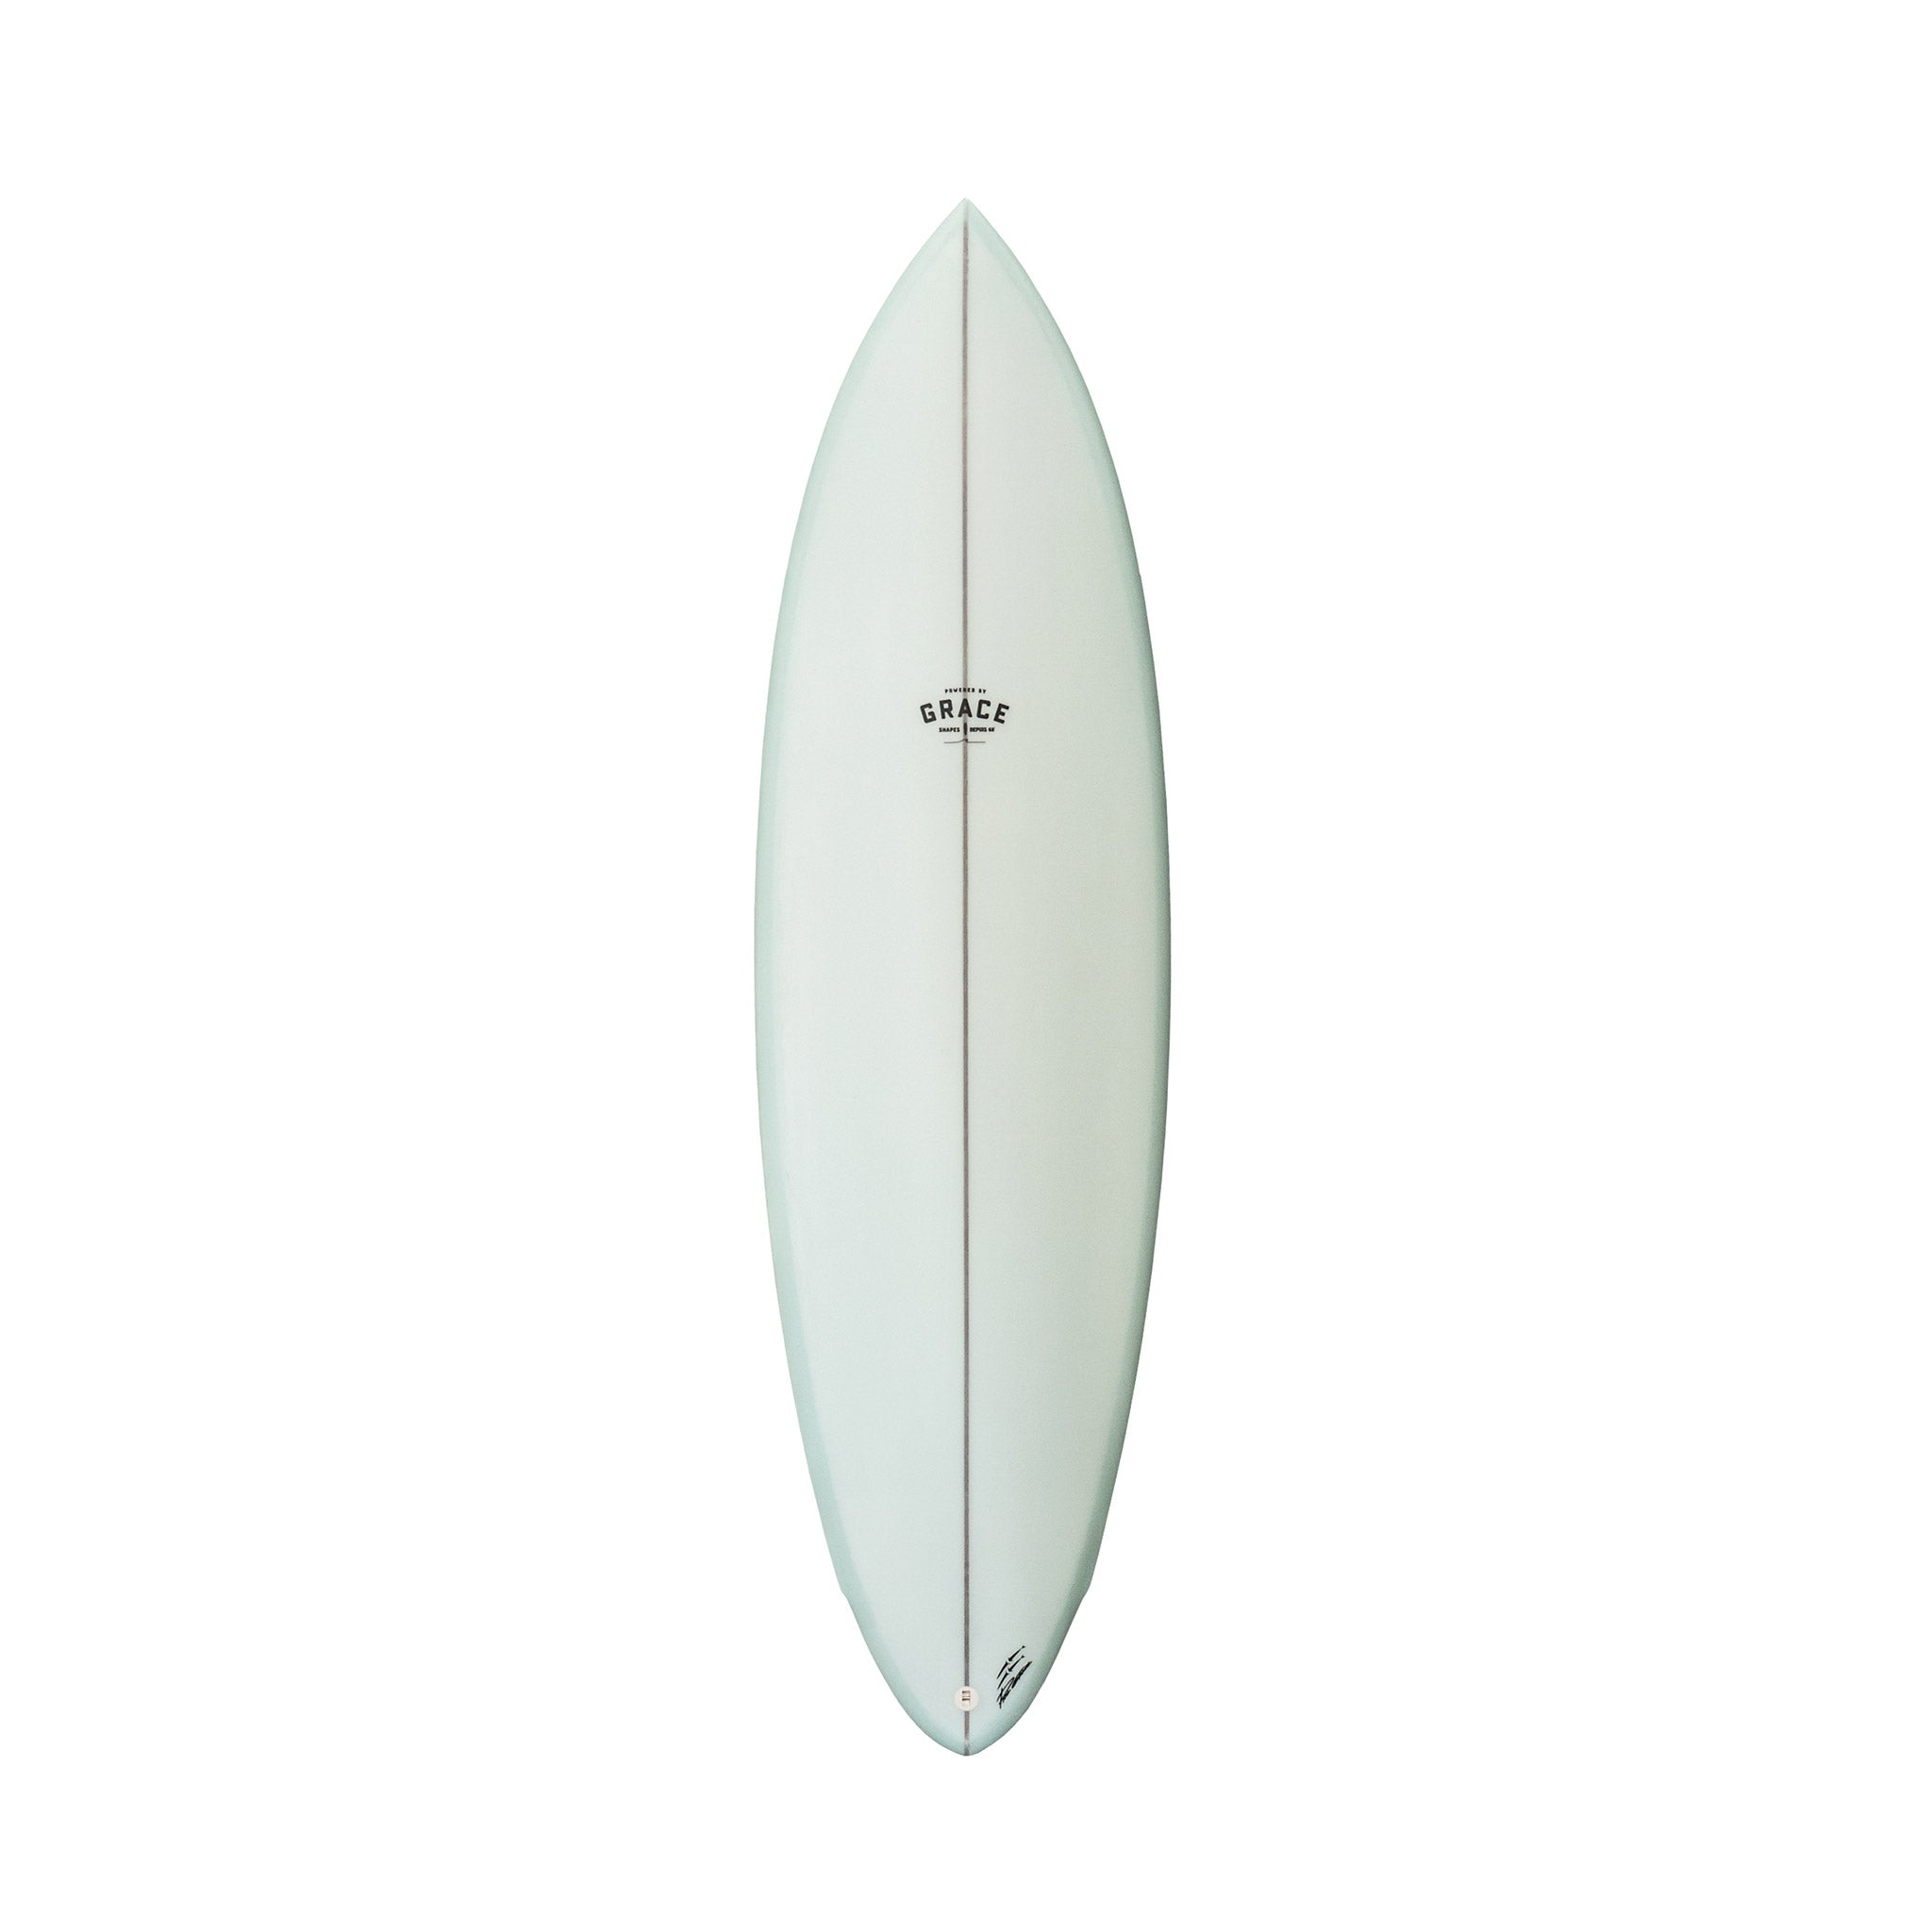 Phil Grace Surfboard Single Fin